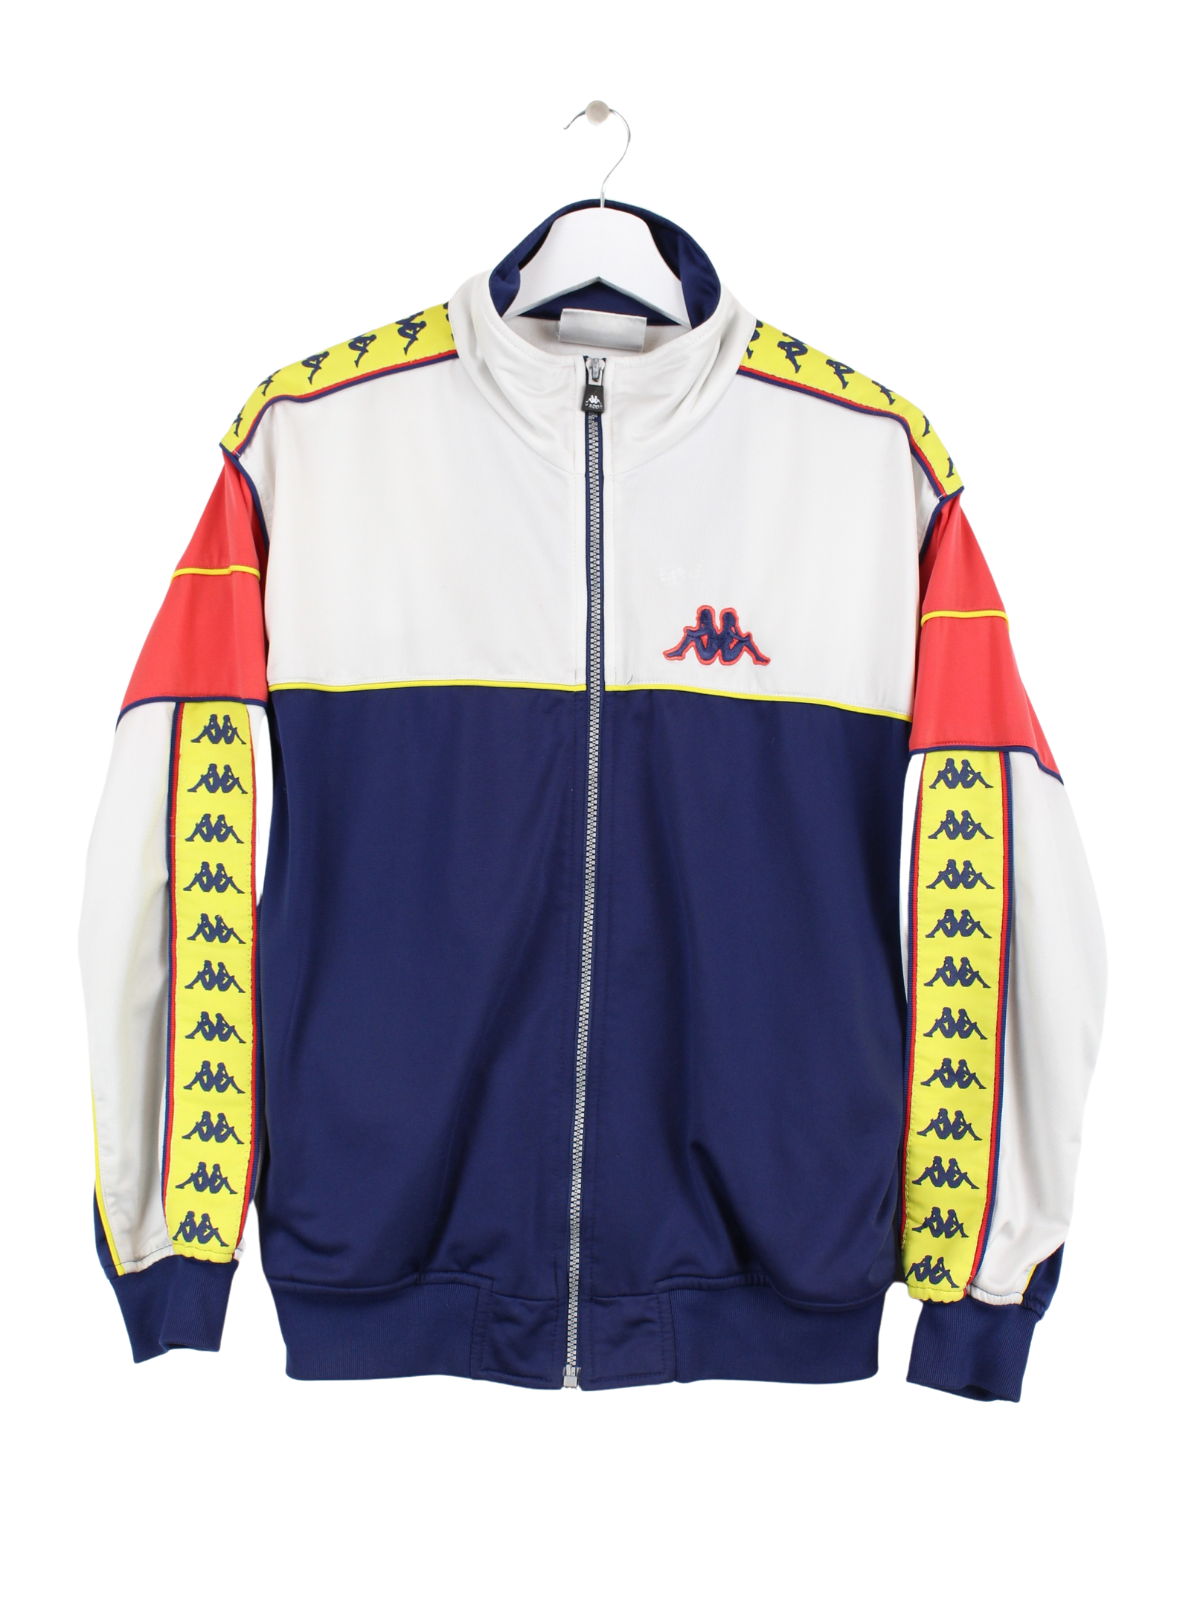 Kappa Training Jacket Multicolored S – Peeces